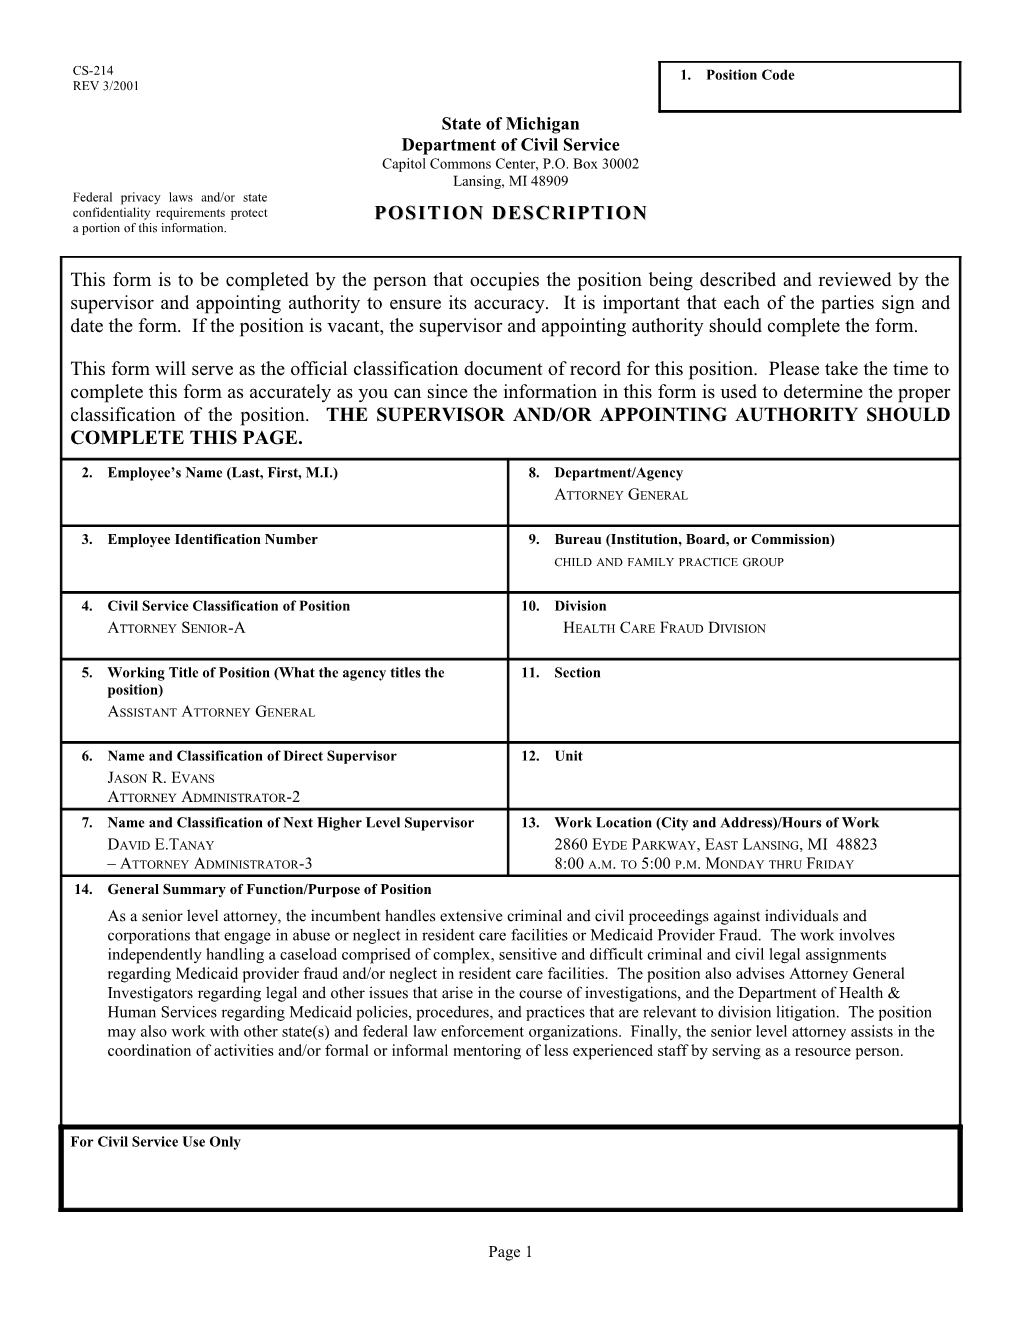 CS-214 Position Description Form s23